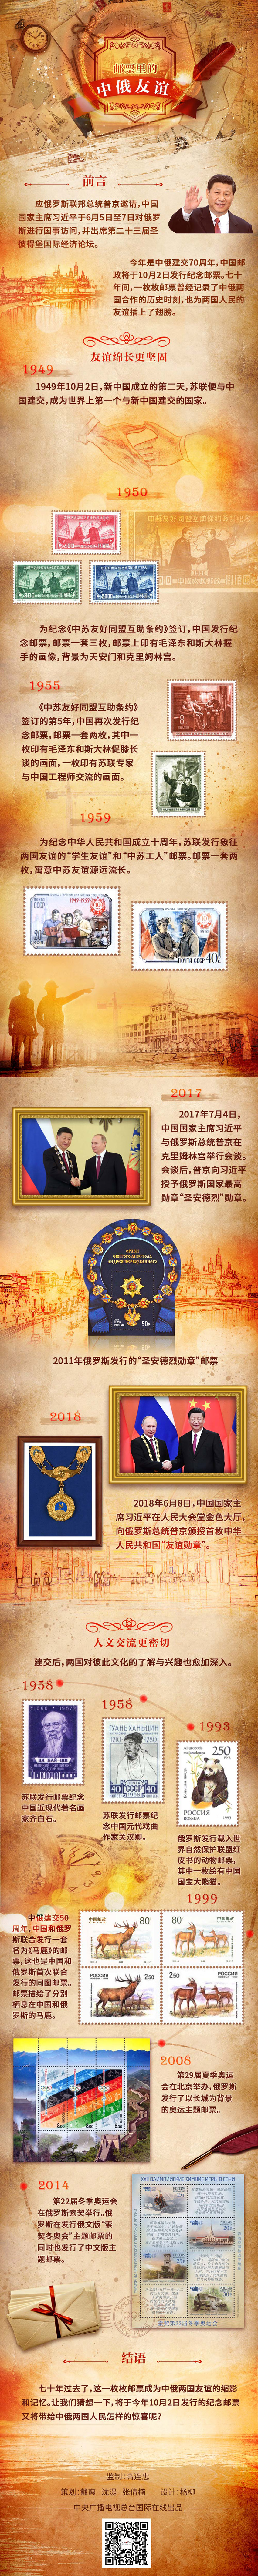 图解丨邮票里的中俄友谊